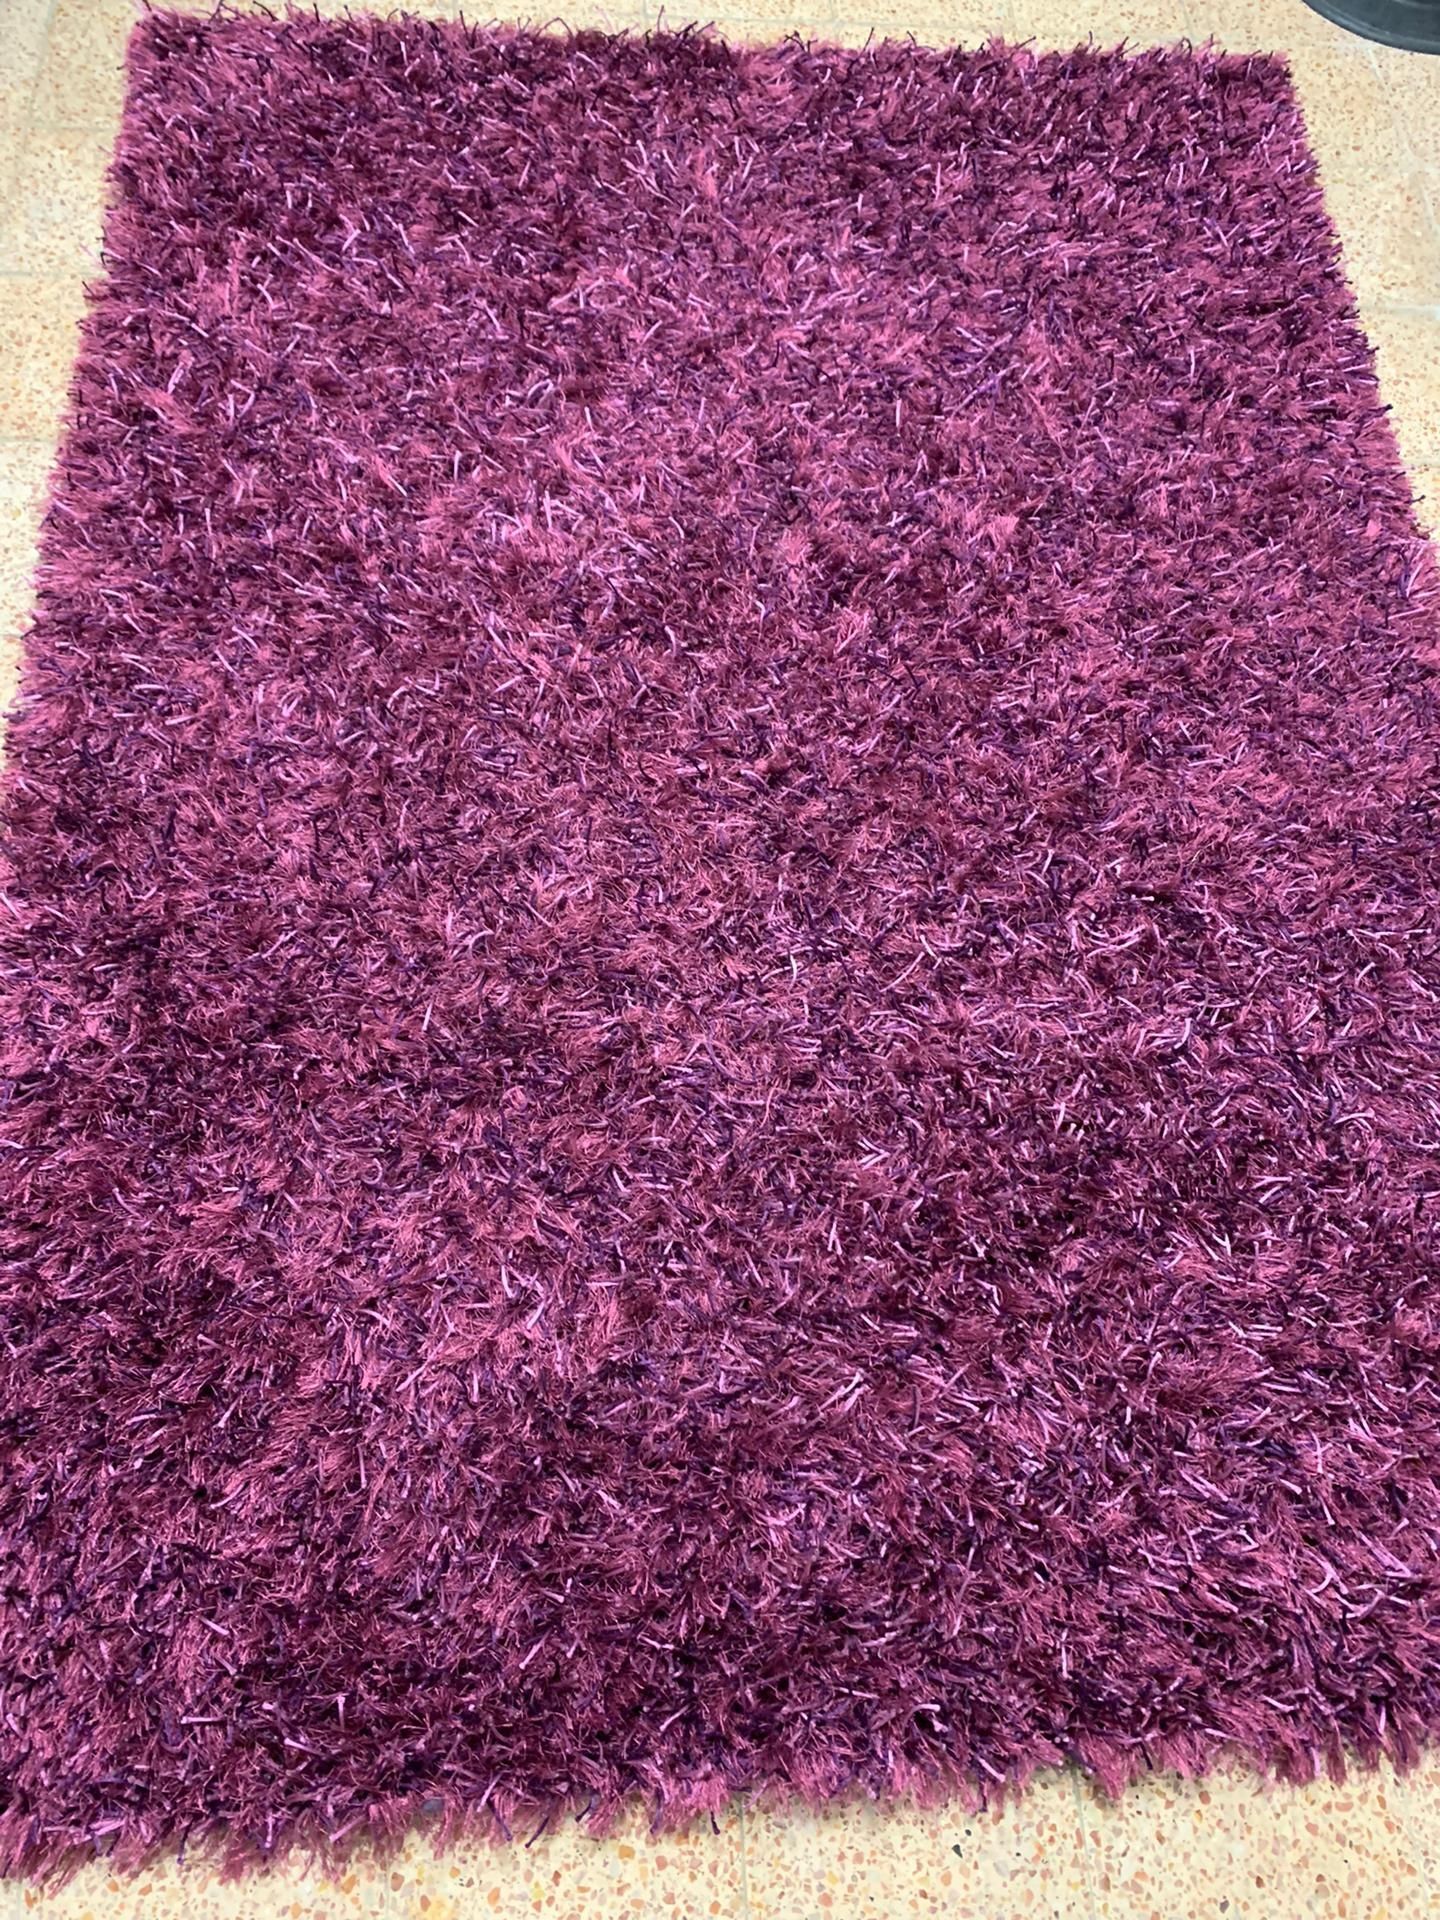 Carpete como nova